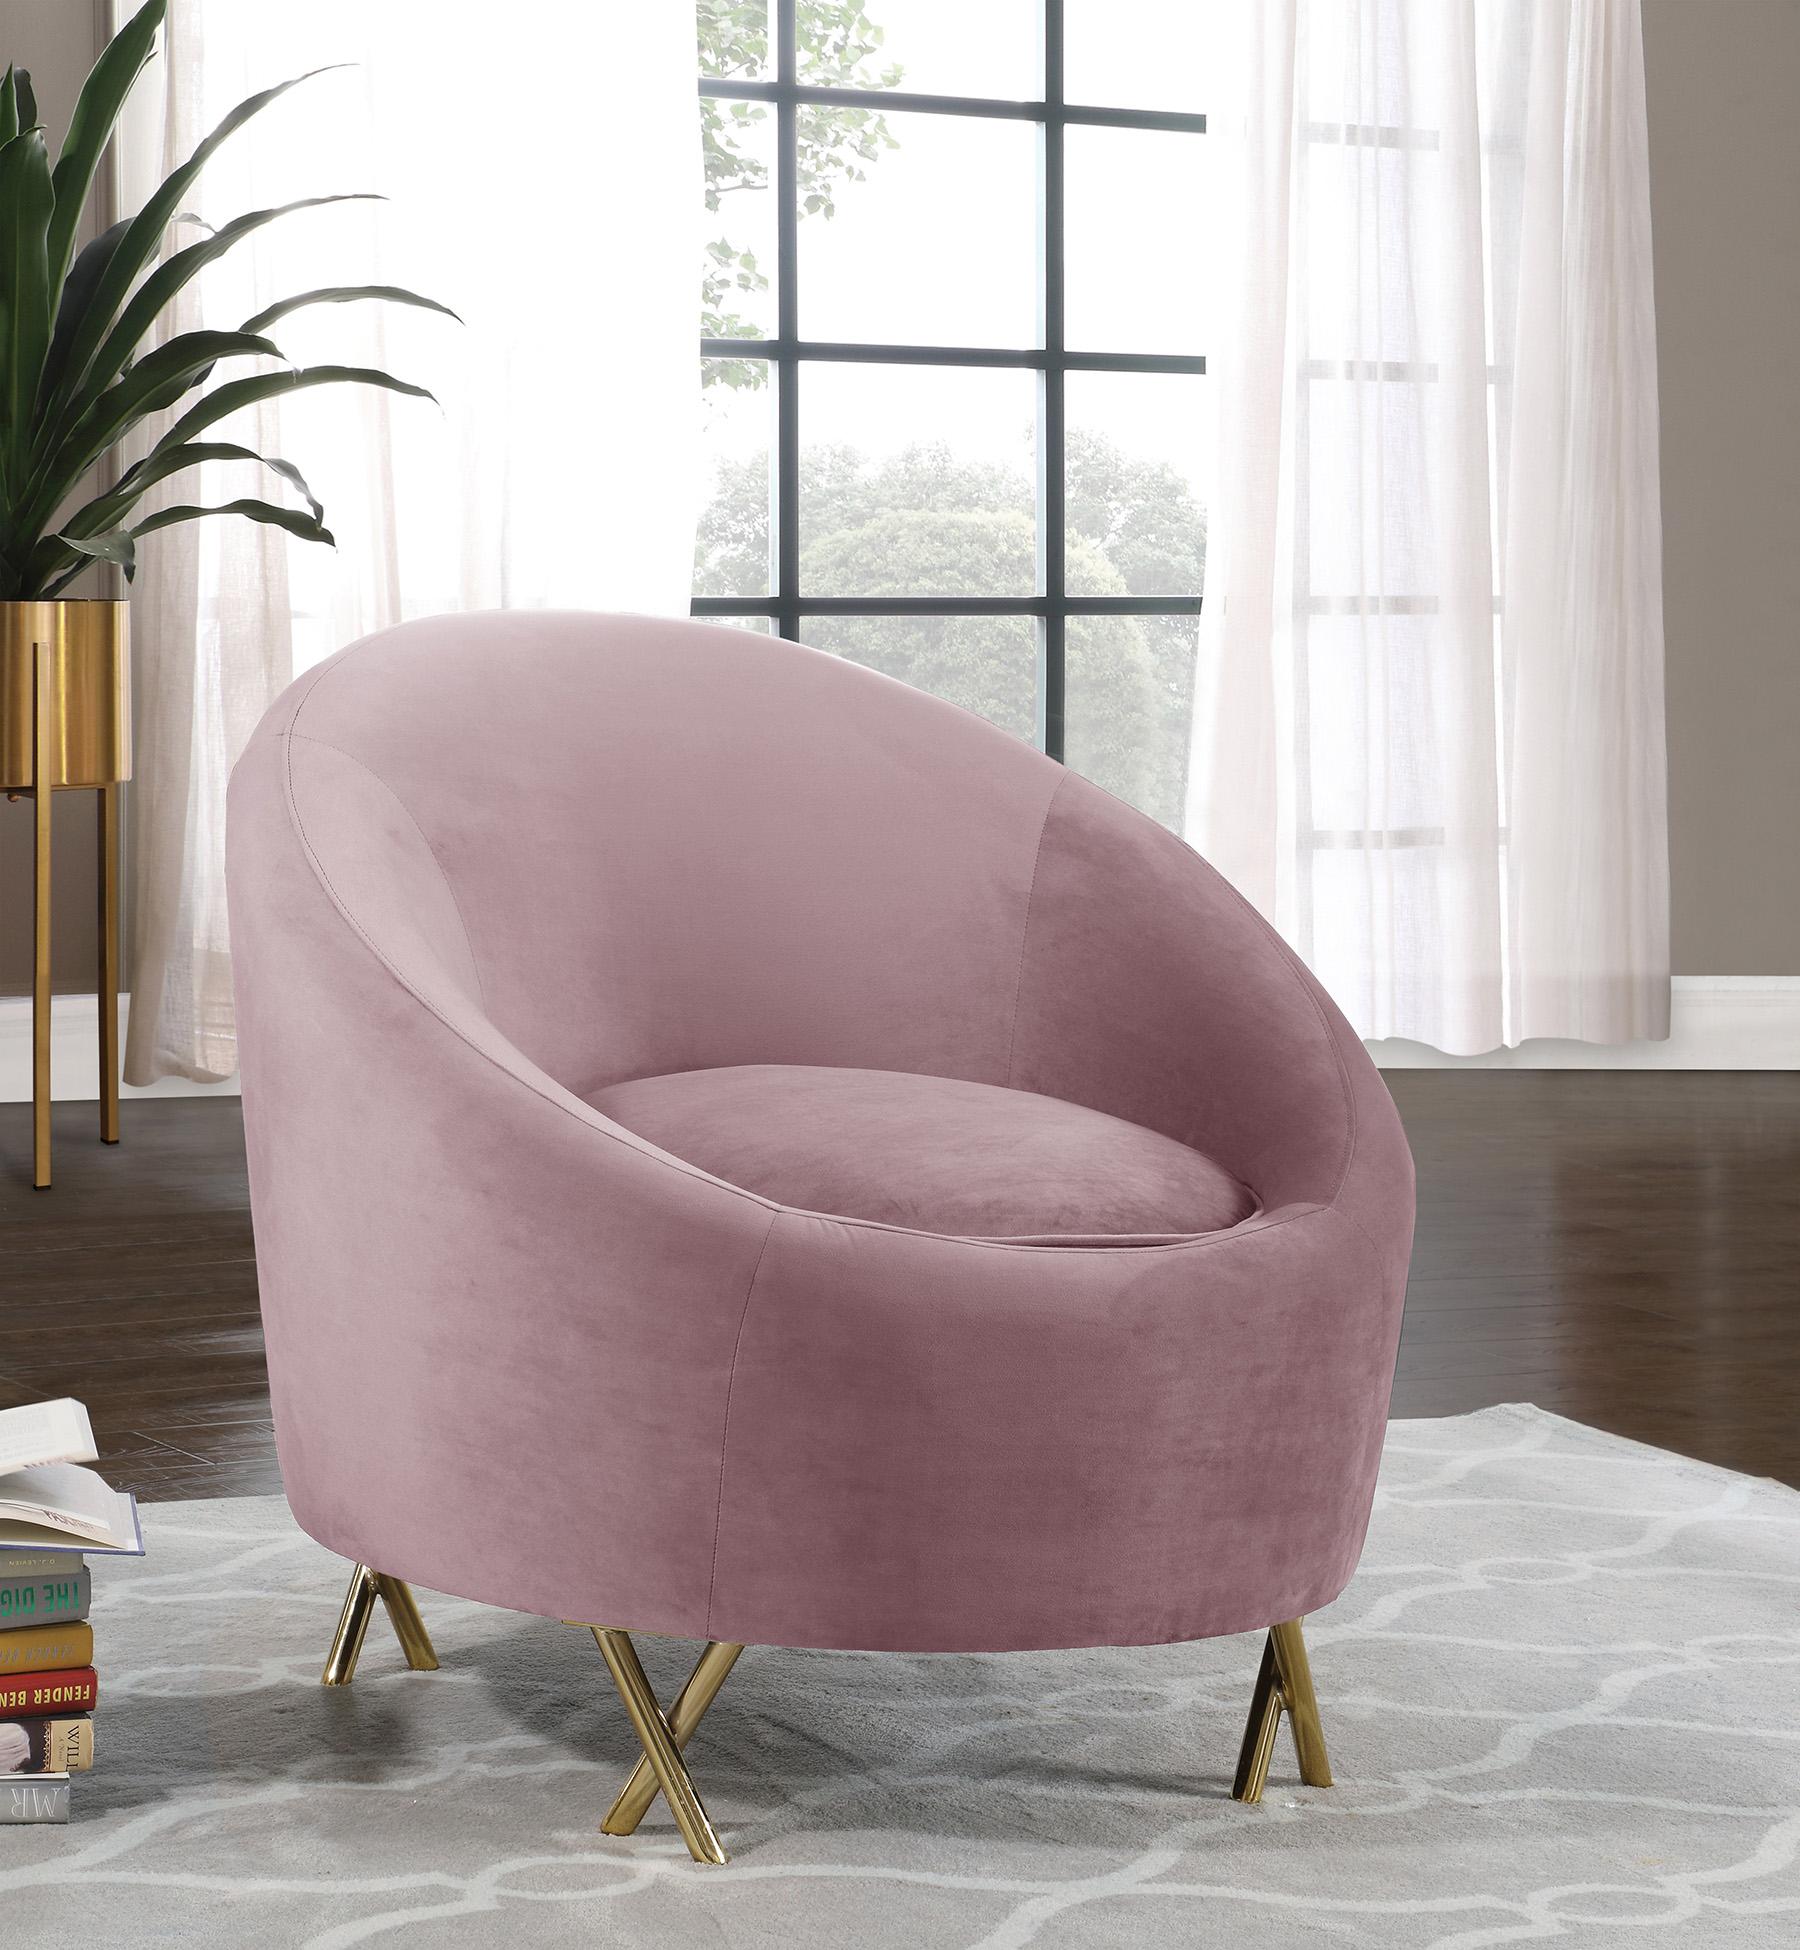 Contemporary, Modern Arm Chair SERPENTINE 679Pink-C 679Pink-C in Pink Velvet